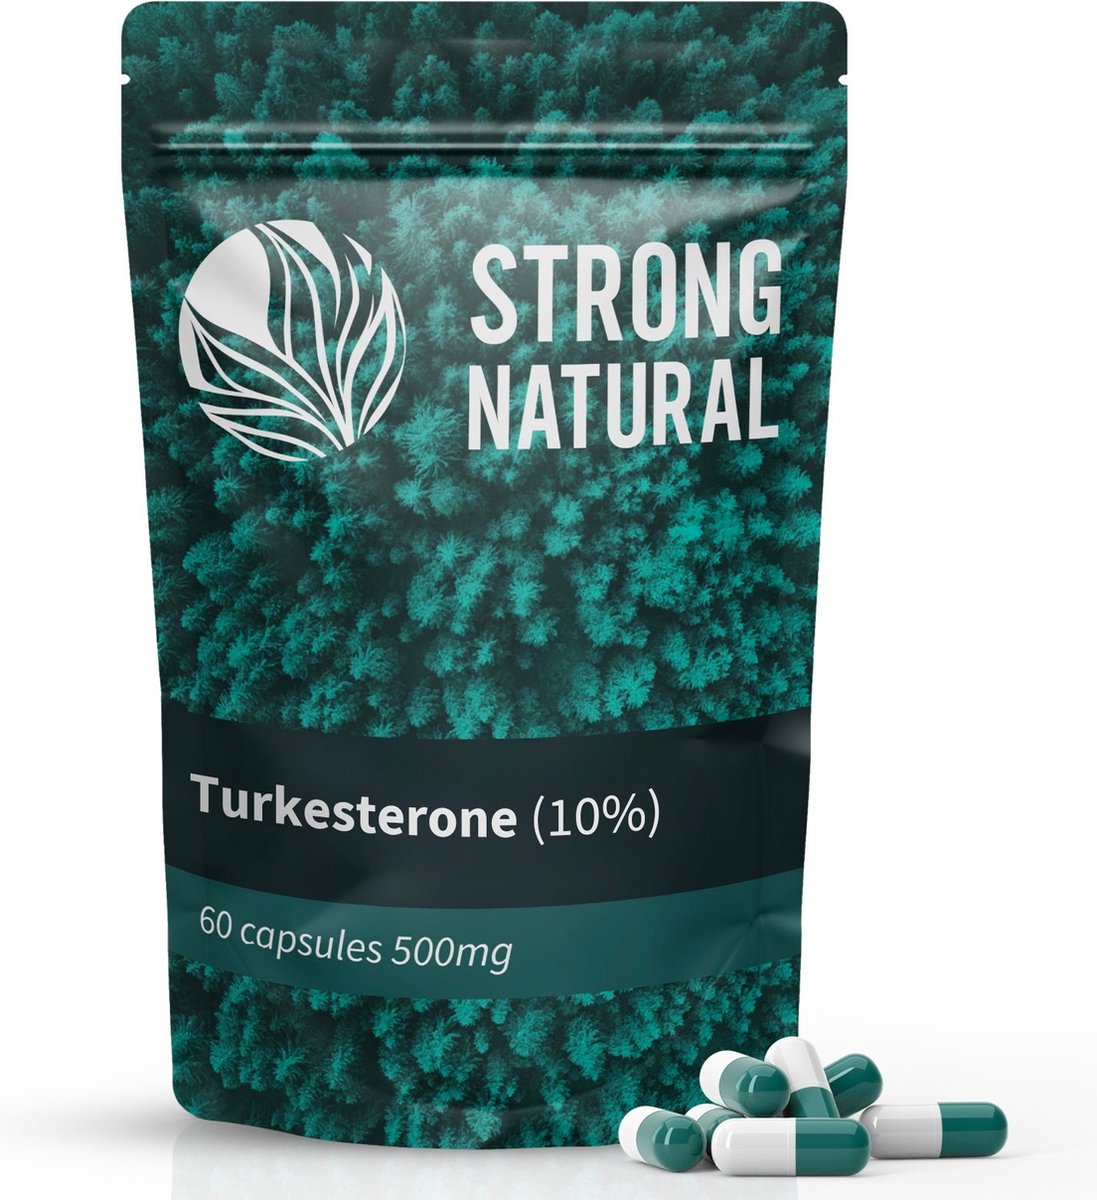 Strong Natural - Turkesterone 10% - 60 krachtige 500mg capsules - Testosteron booster - vergelijkbaar met tongkat ali